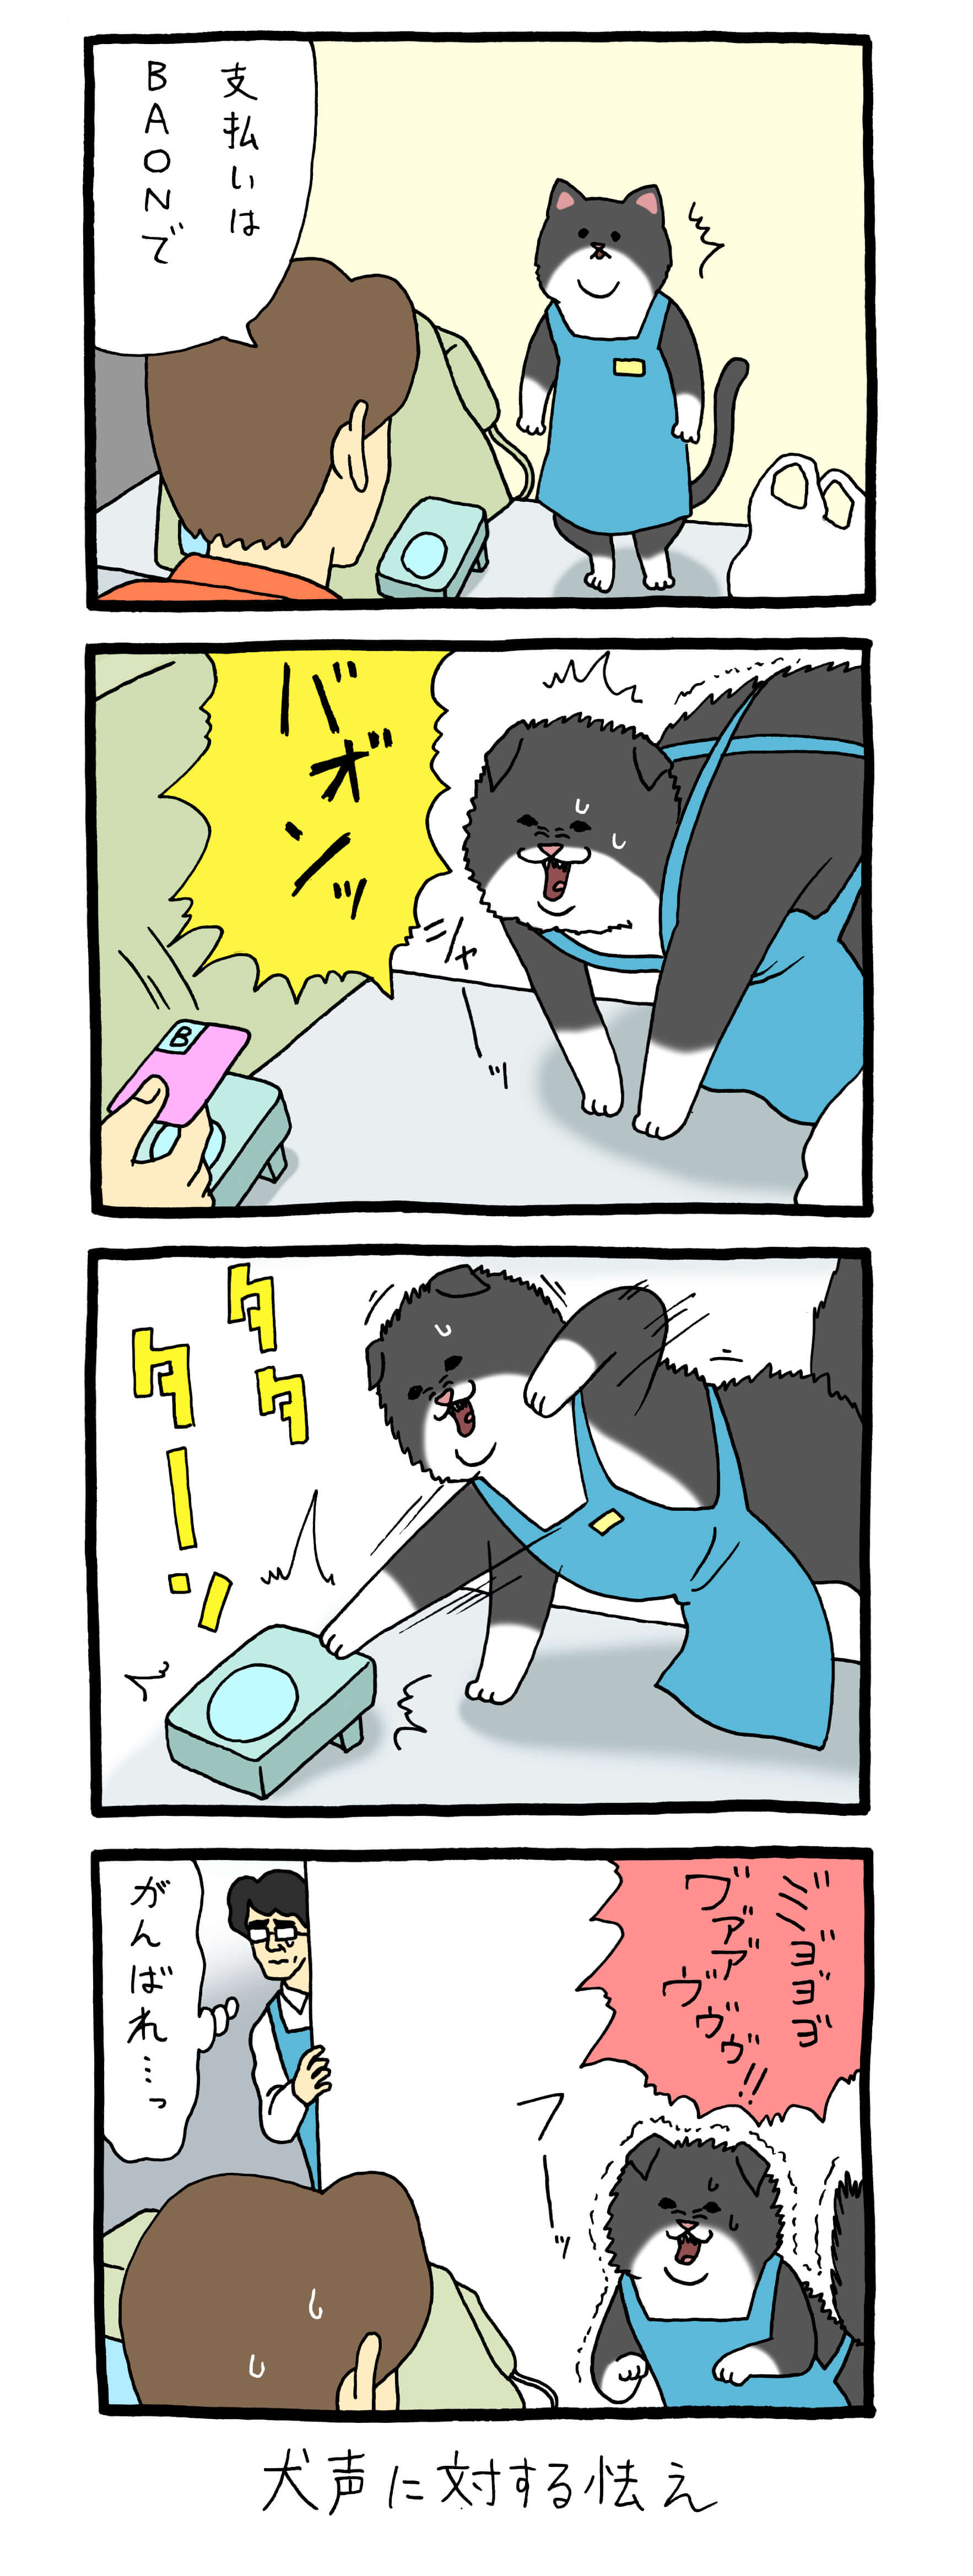 レジネコ 漫画 キューライス 4コマ ネコ 猫 フロム・エー